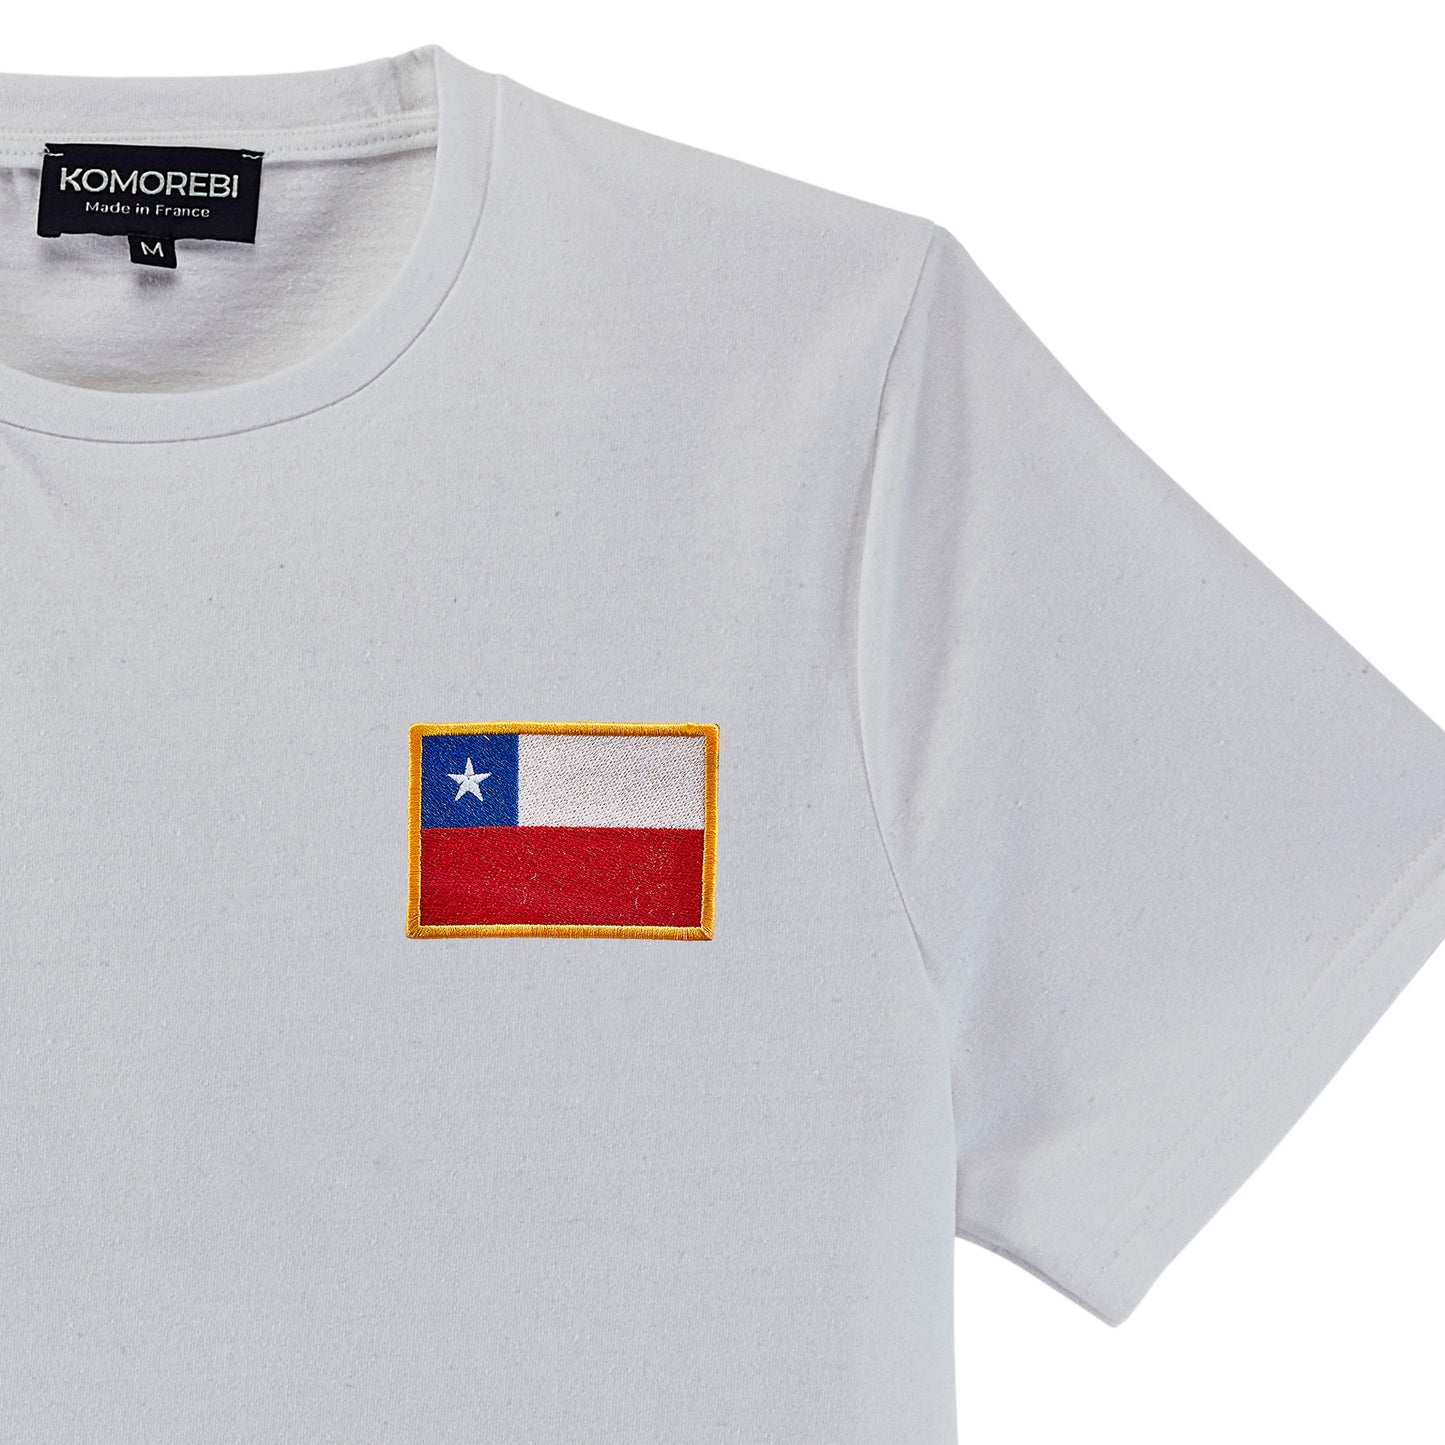 Chili • T-shirt